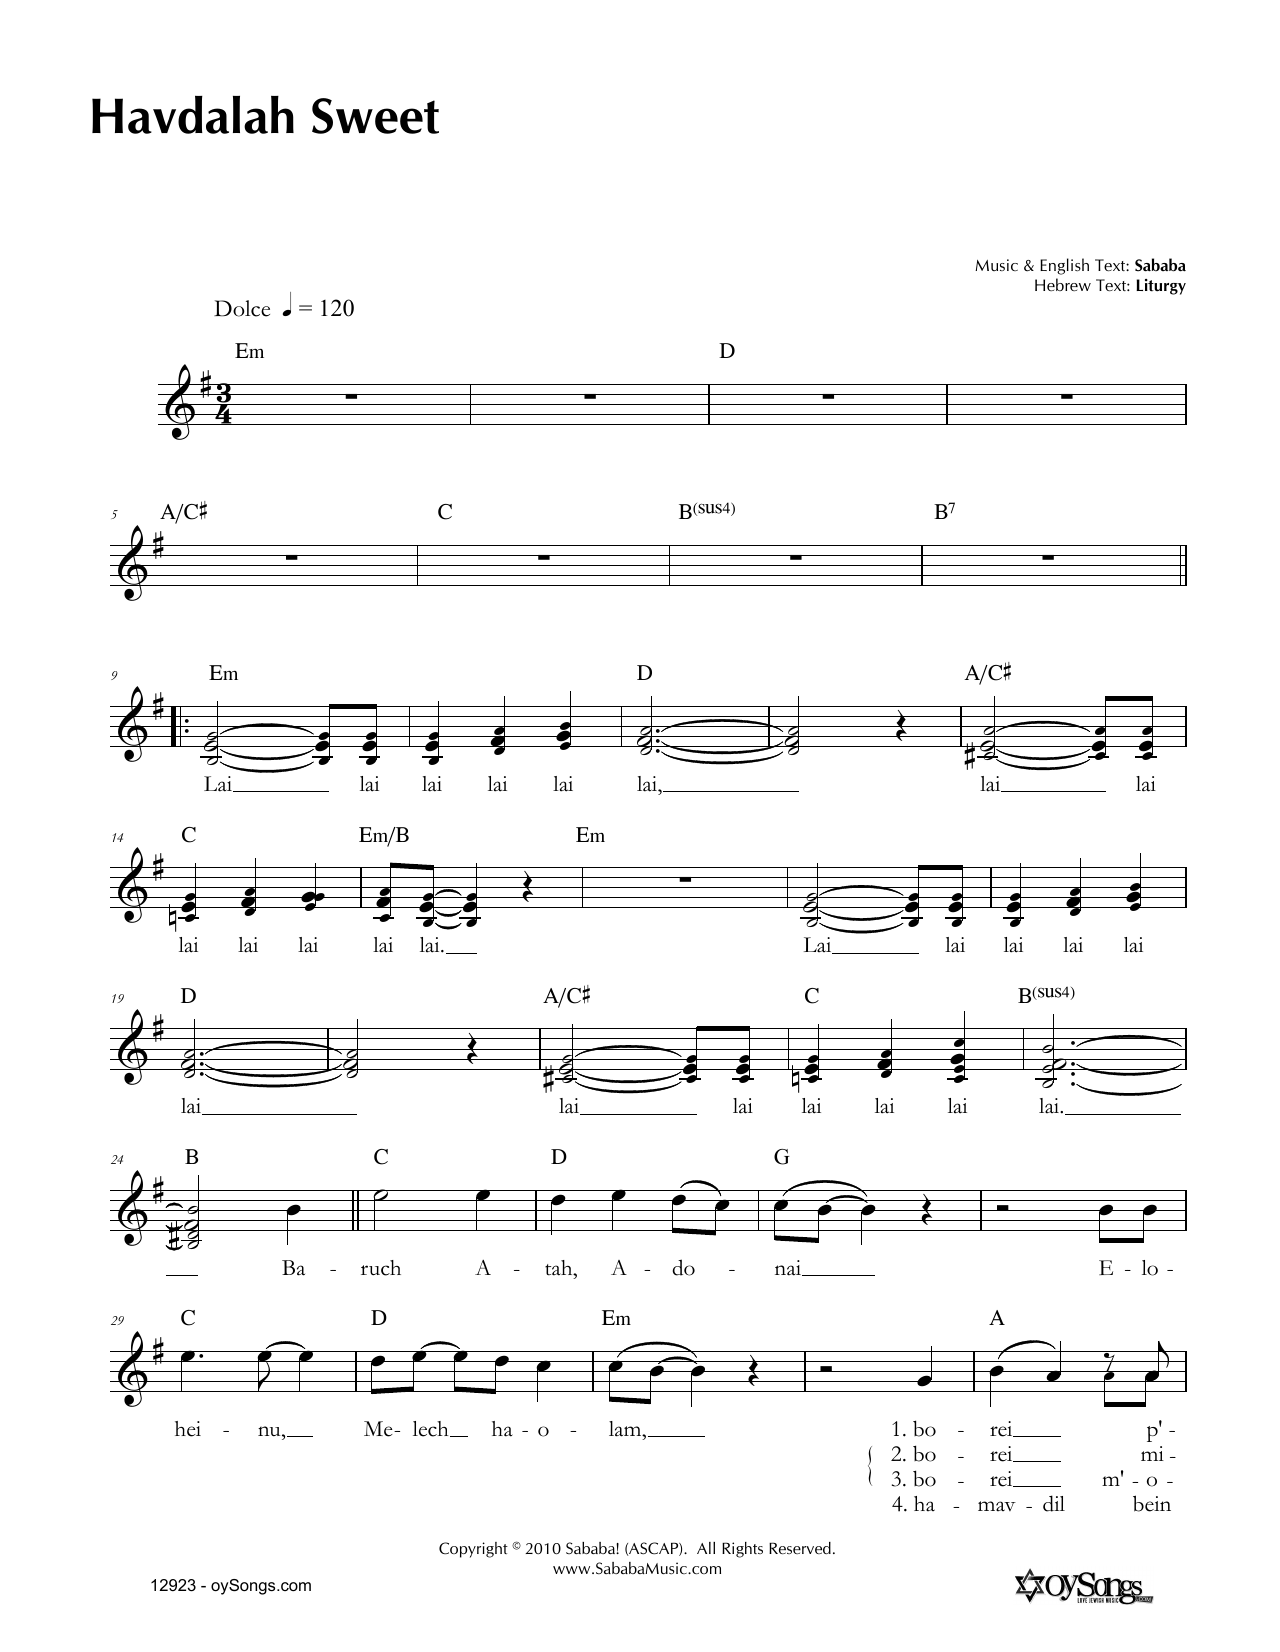 Sababa Havdalah Sweet Sheet Music Notes & Chords for Melody Line, Lyrics & Chords - Download or Print PDF